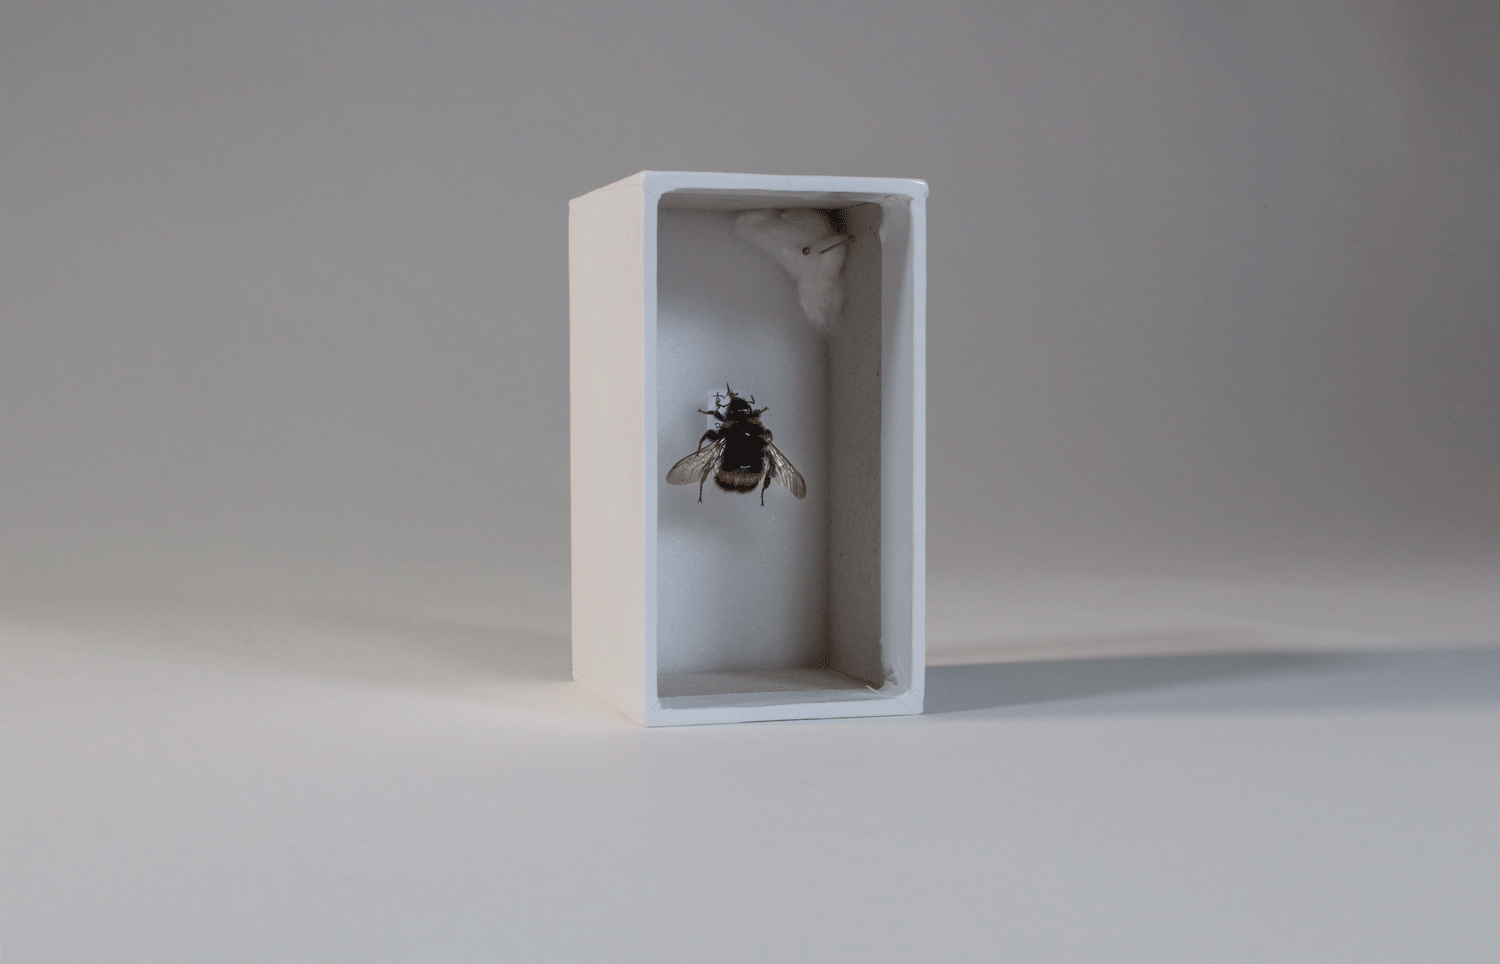 2. Bee by Hannah Stevenson